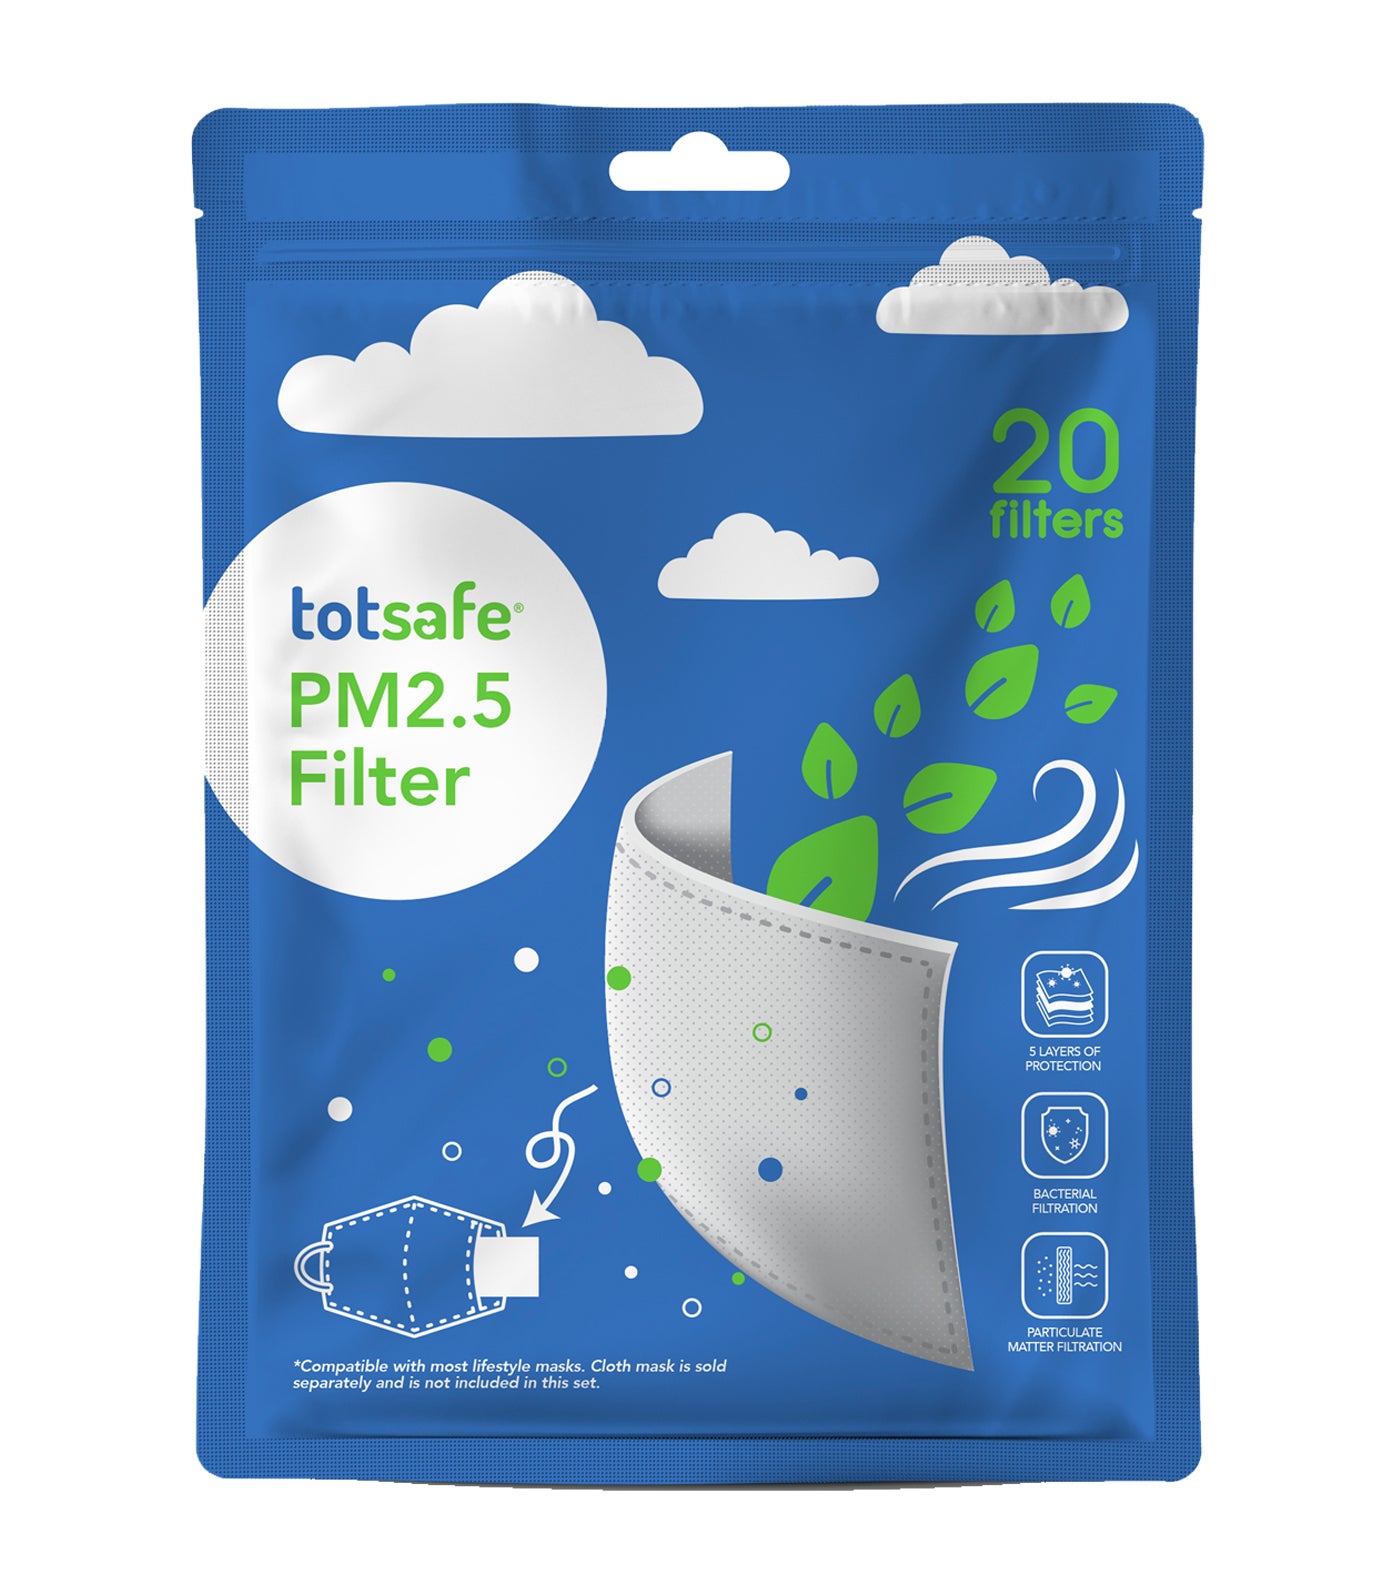 totsafe pm2.5 filter packs 20s